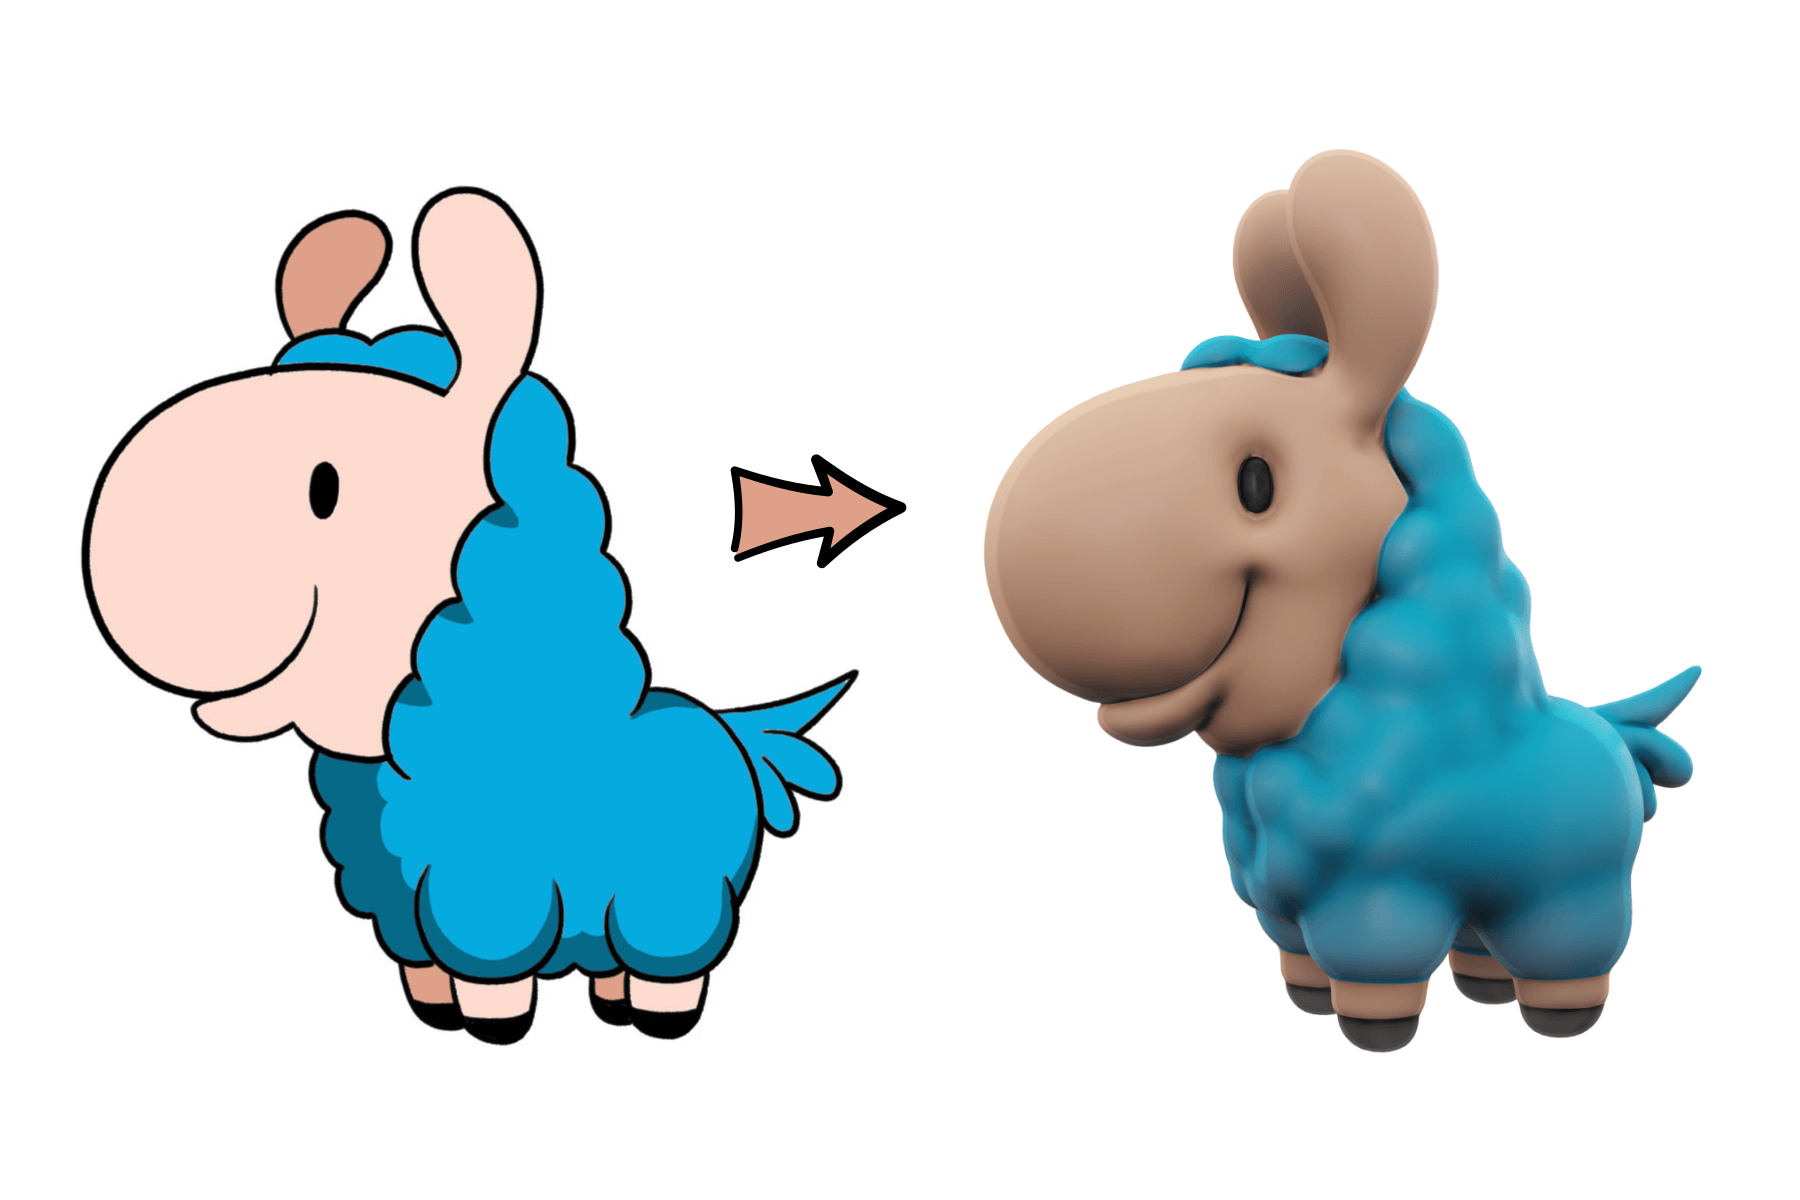 Loffy Llama drawing vs 3D